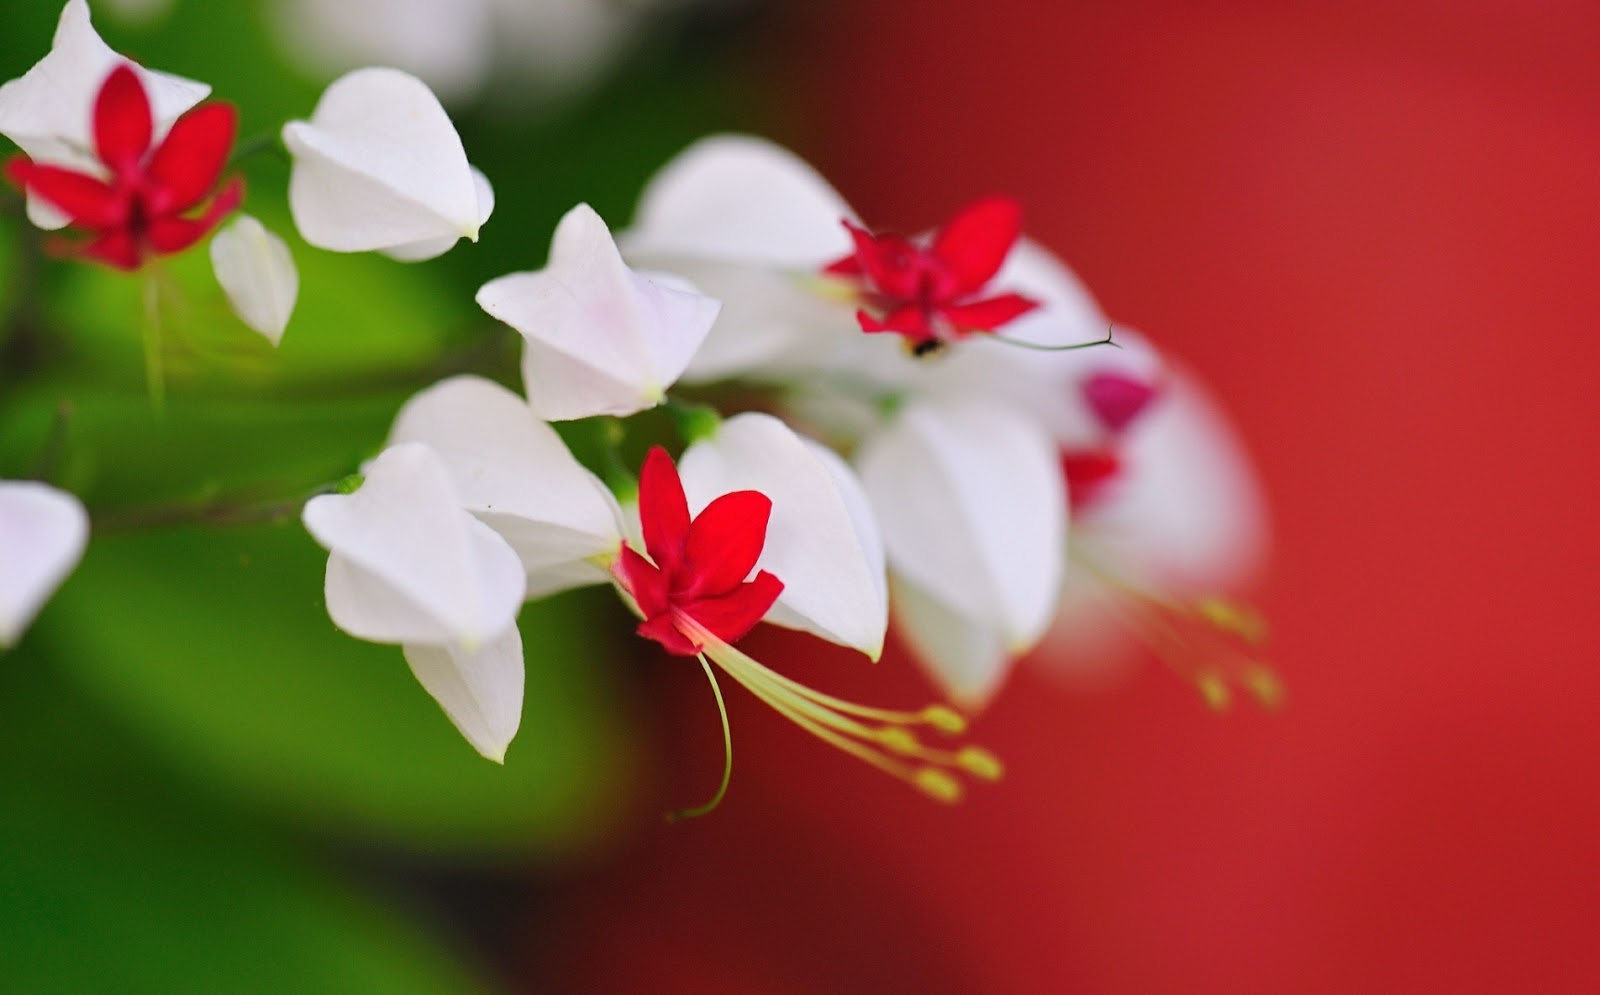 Gambar Bunga Indah dan Cantik | Kumpulan Gambar